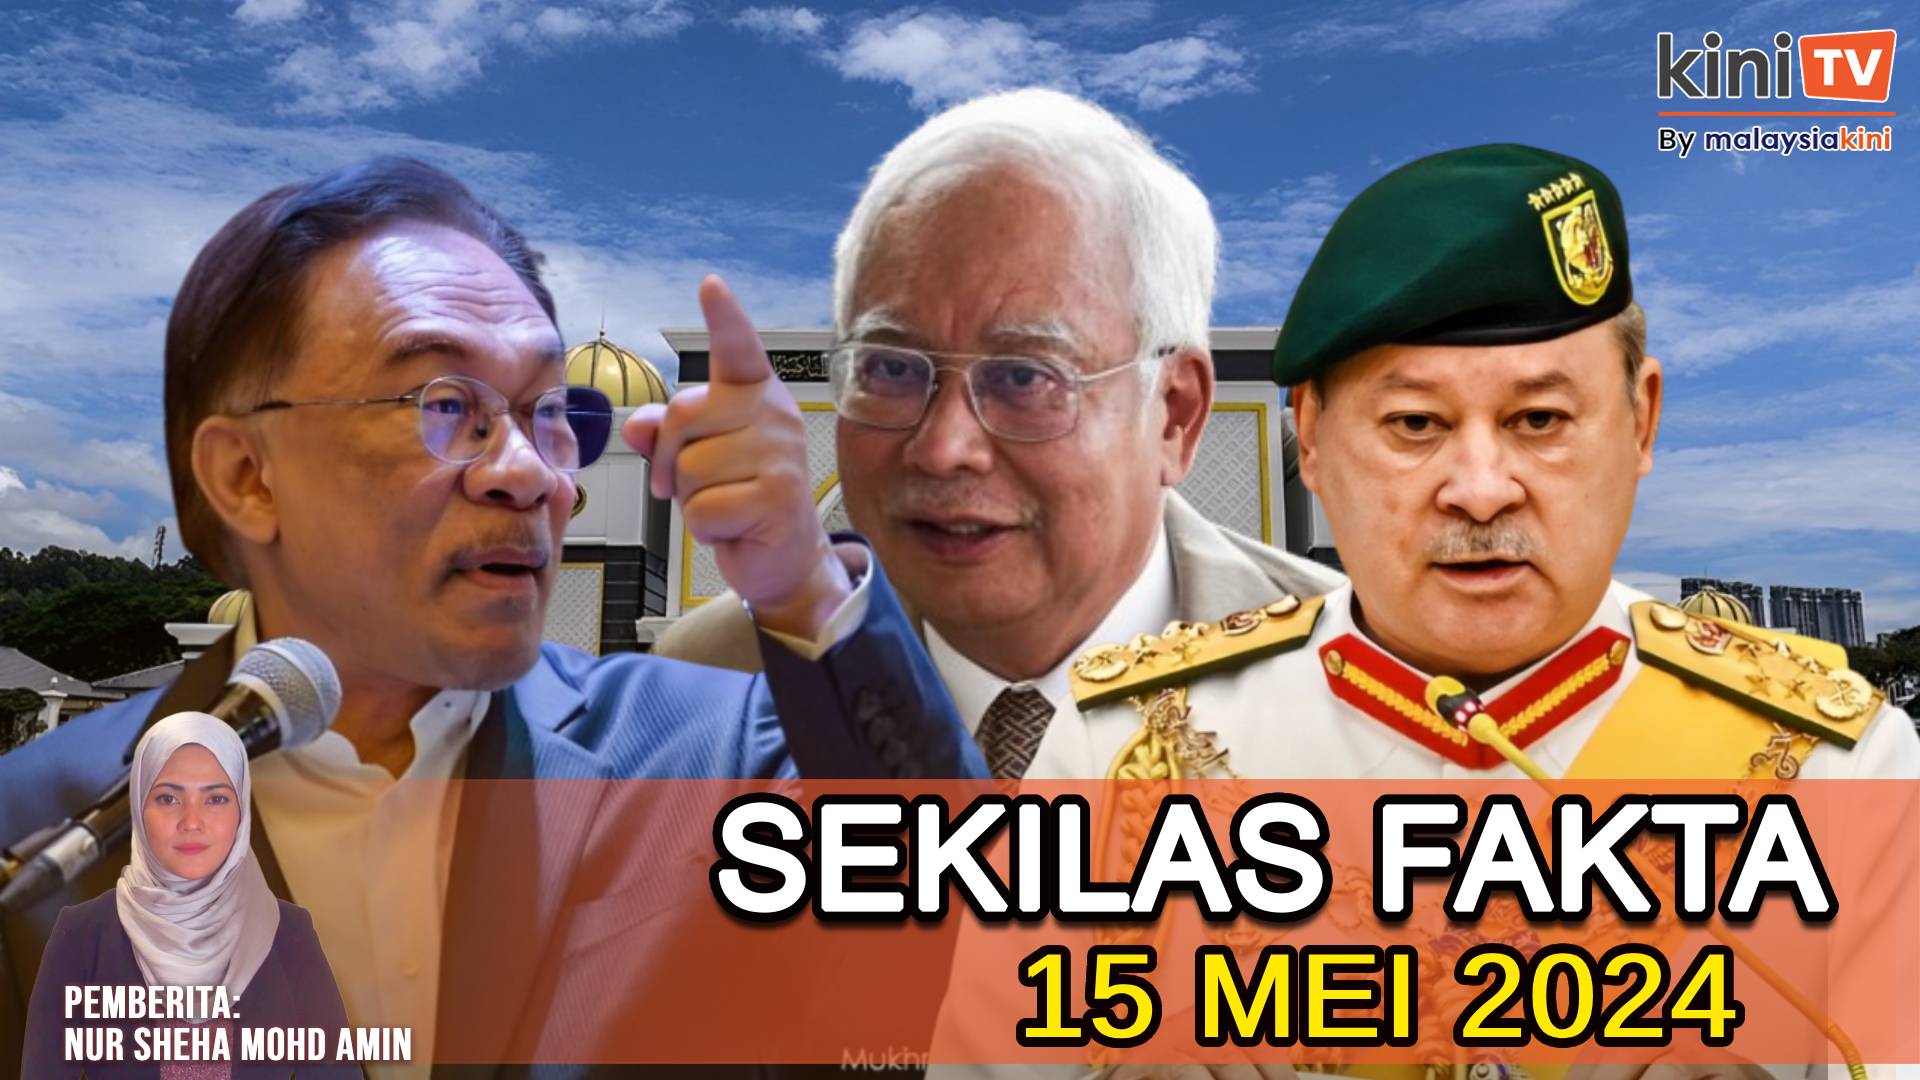 Anwar 'bersuara' jika diminta Agong, Tahanan rumah Najib..., SPRM tahan 5 Adun Perlis?|SEKILAS FAKTA